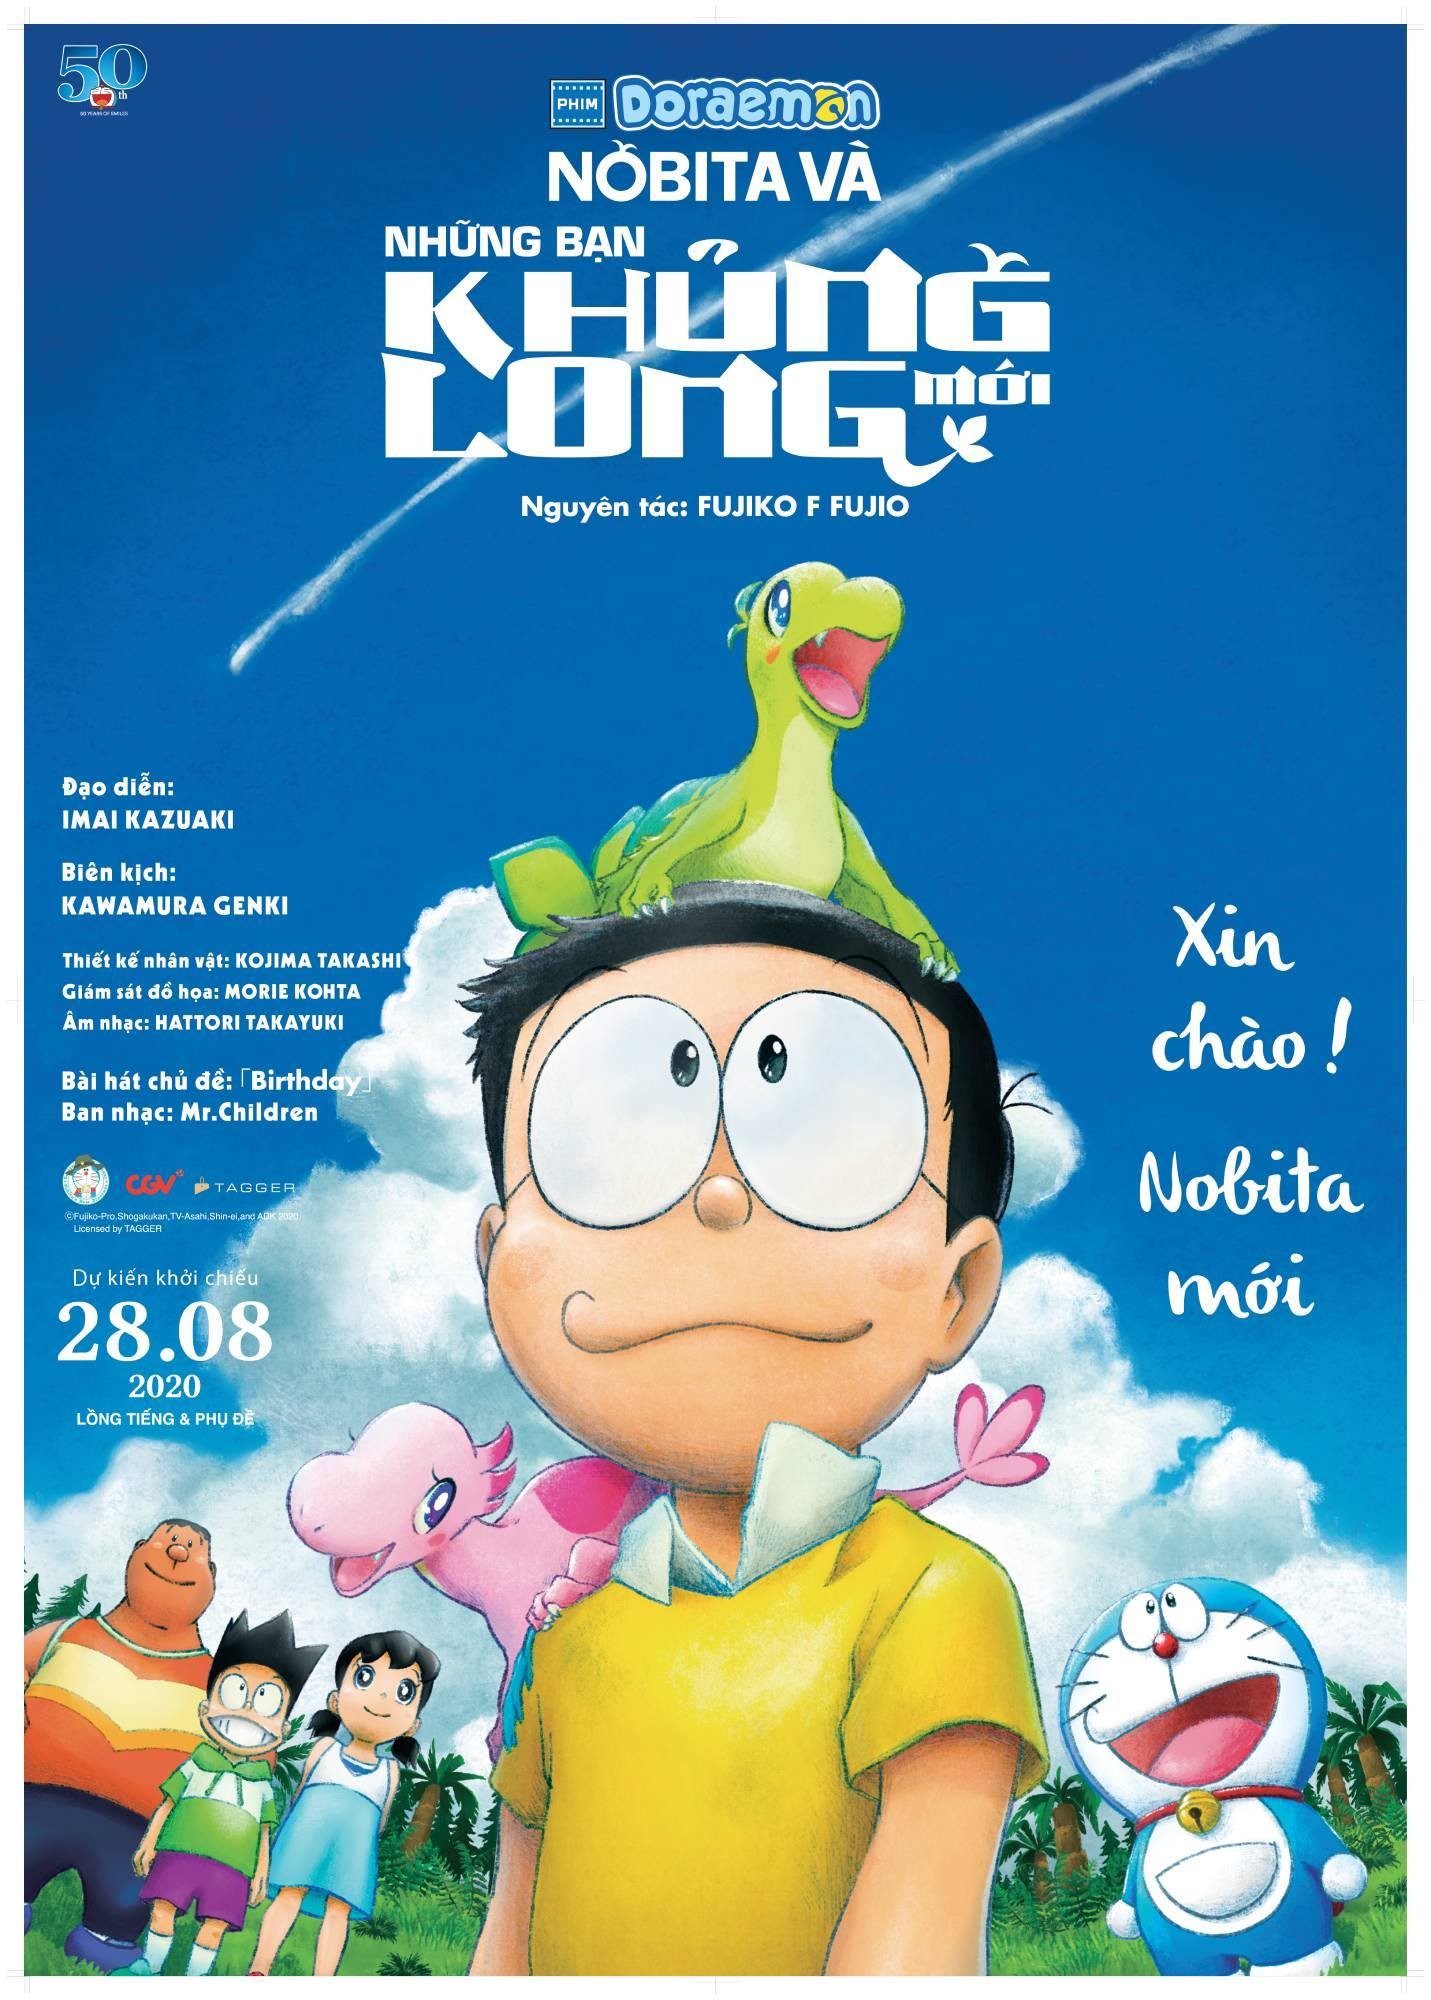 Bạn là fan của Nobita và khủng long mới? Nếu vậy, hãy xem và đắm chìm trong những hình ảnh đẹp mắt về câu chuyện phép thuật phiêu lưu của Nobita và nhóm bạn thân.